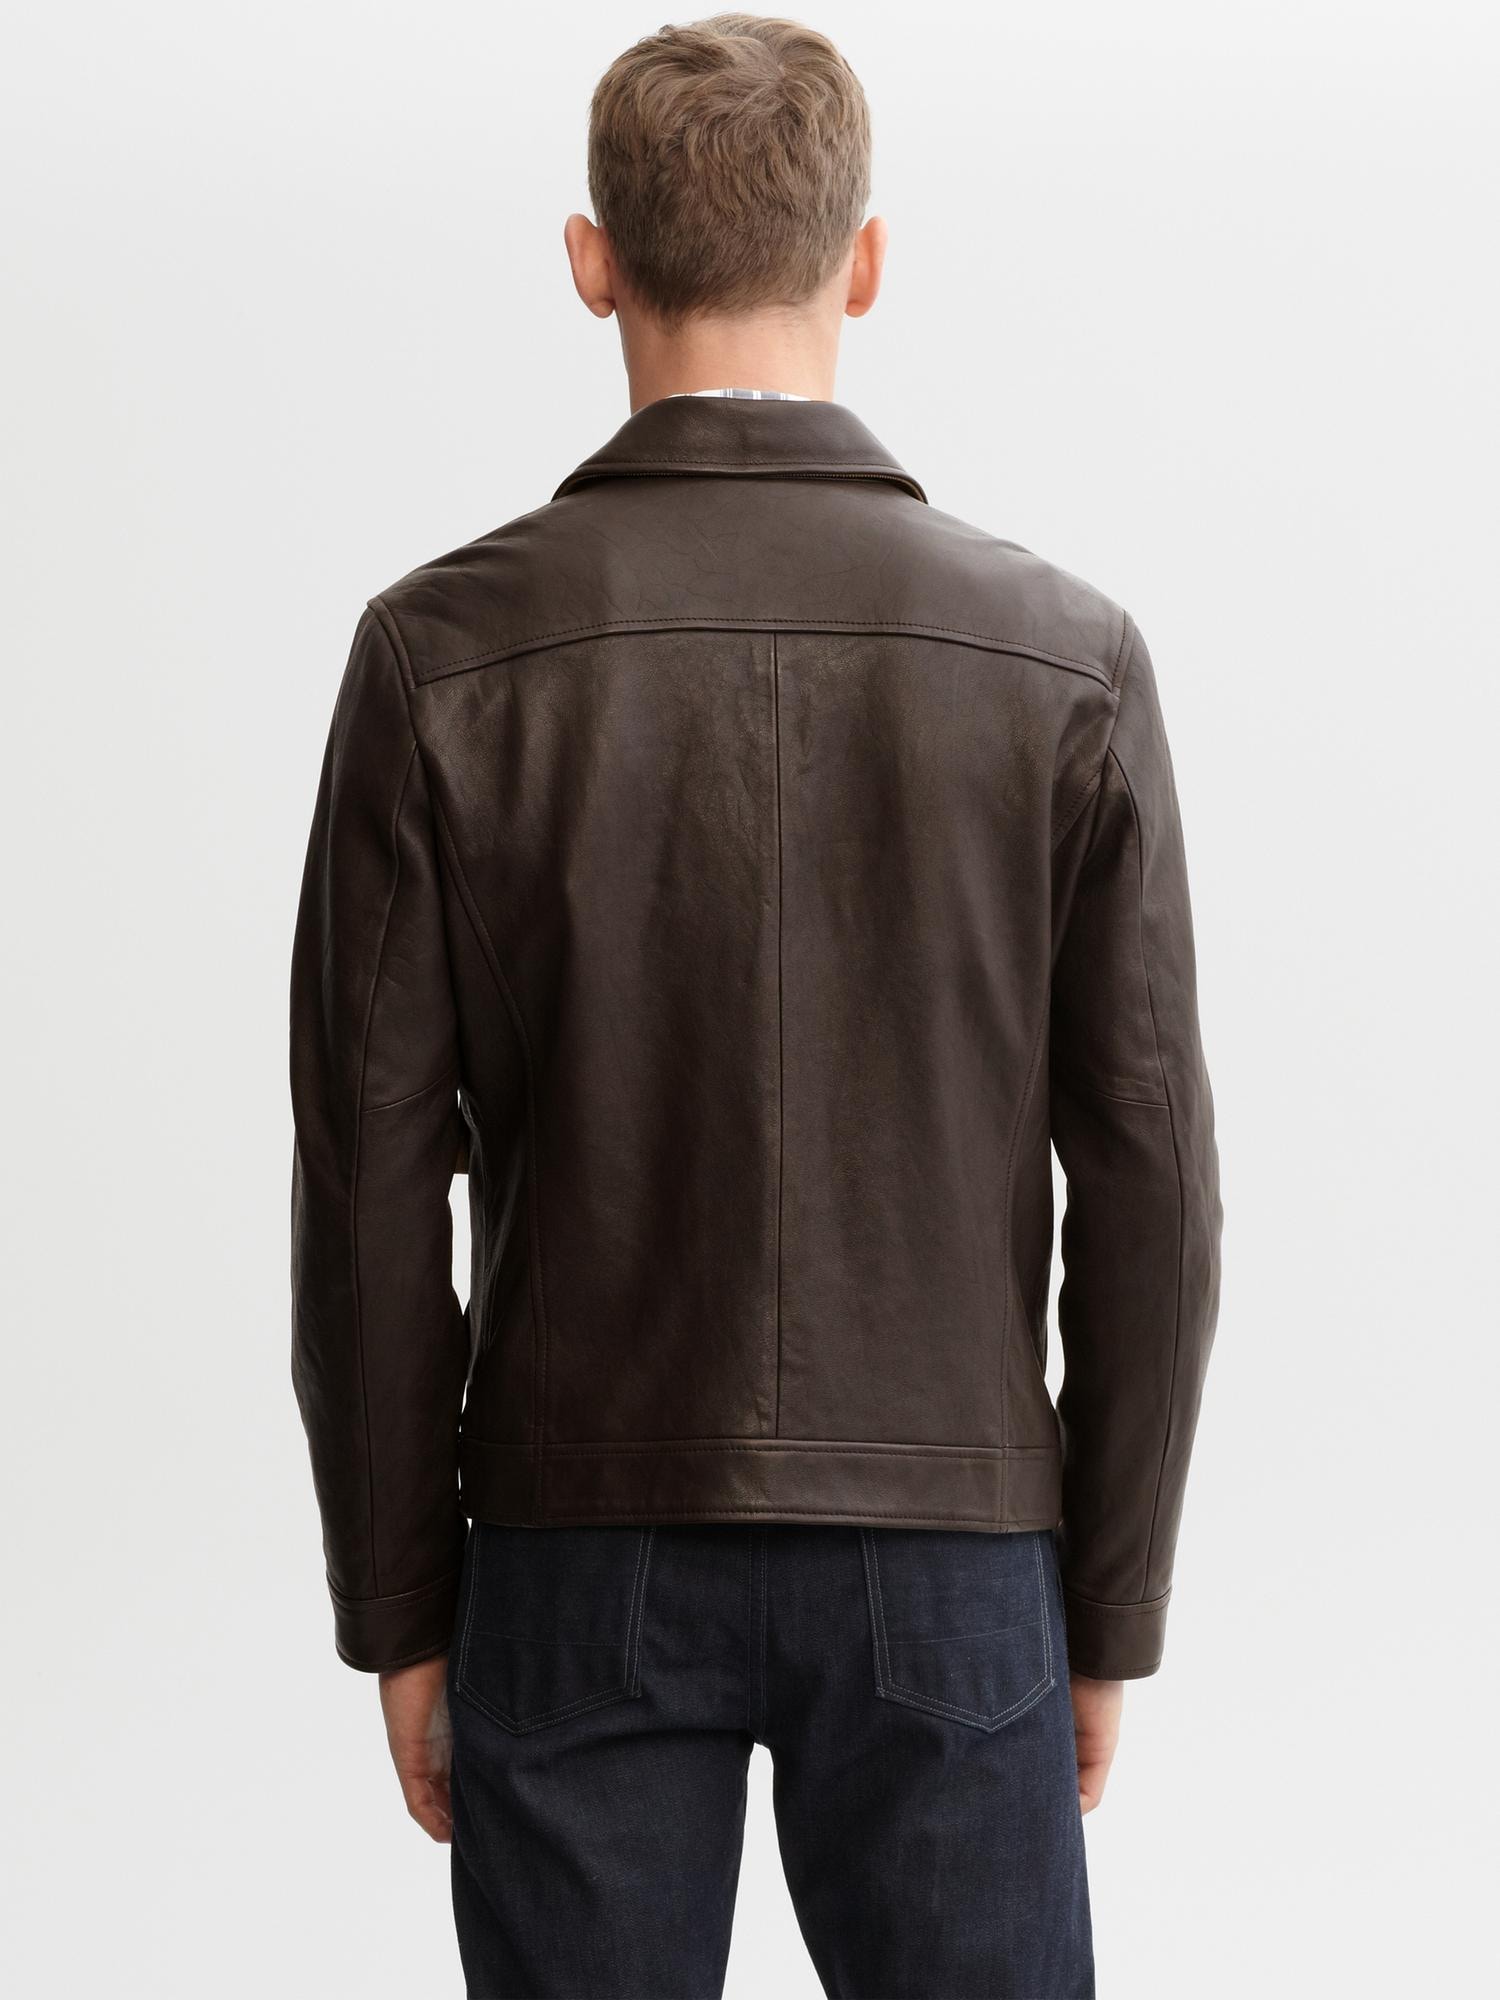 Four pocket leather jacket